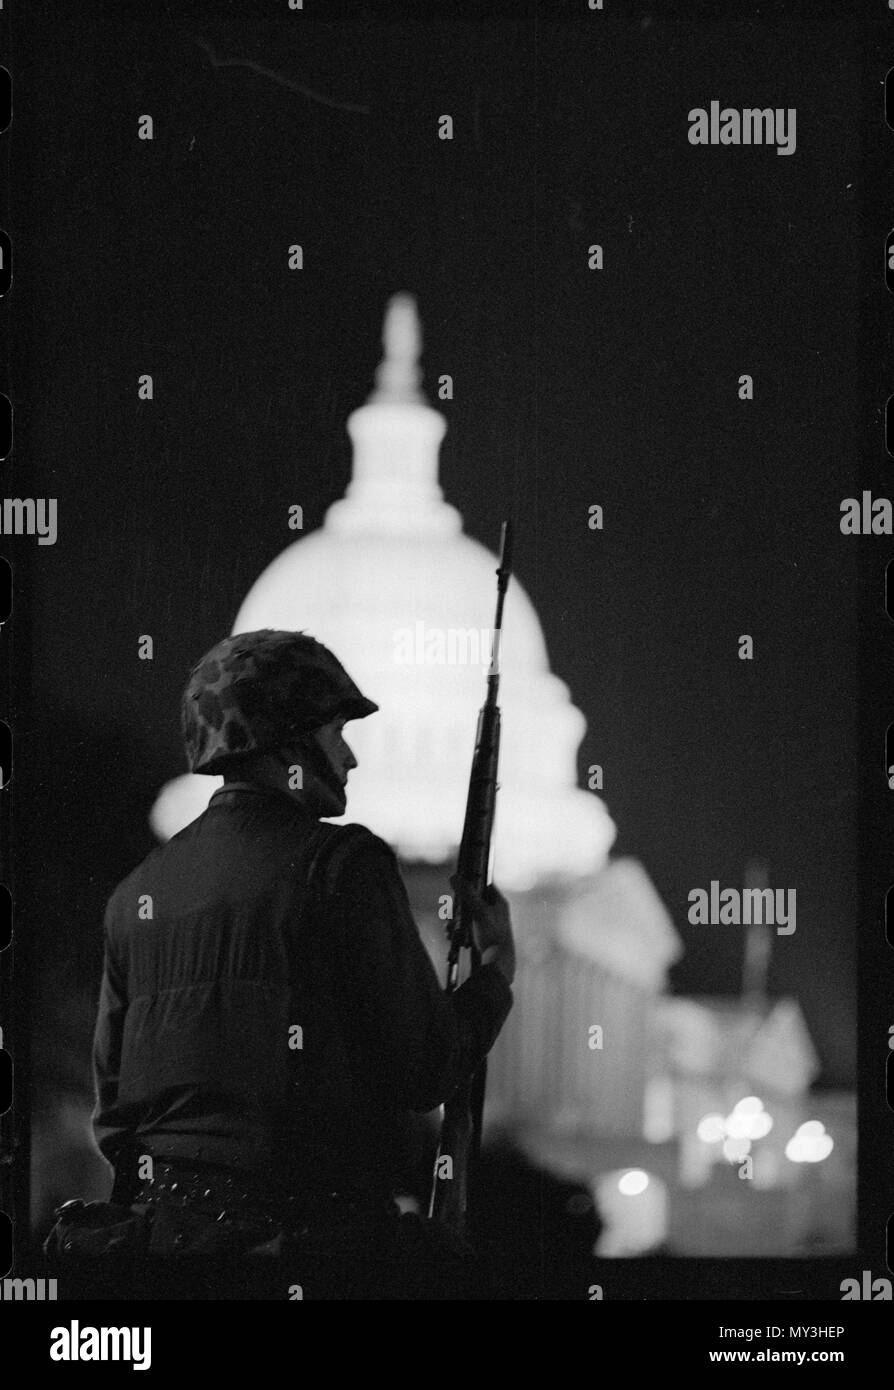 Couvre-feu à l'extérieur du soldat applique U S Capitol après des émeutes à la suite de Dr Martin Luther King, Jr, l'assassinat de Washington, DC, 04/08/1968. Photo par Warren K. Leffler. Banque D'Images